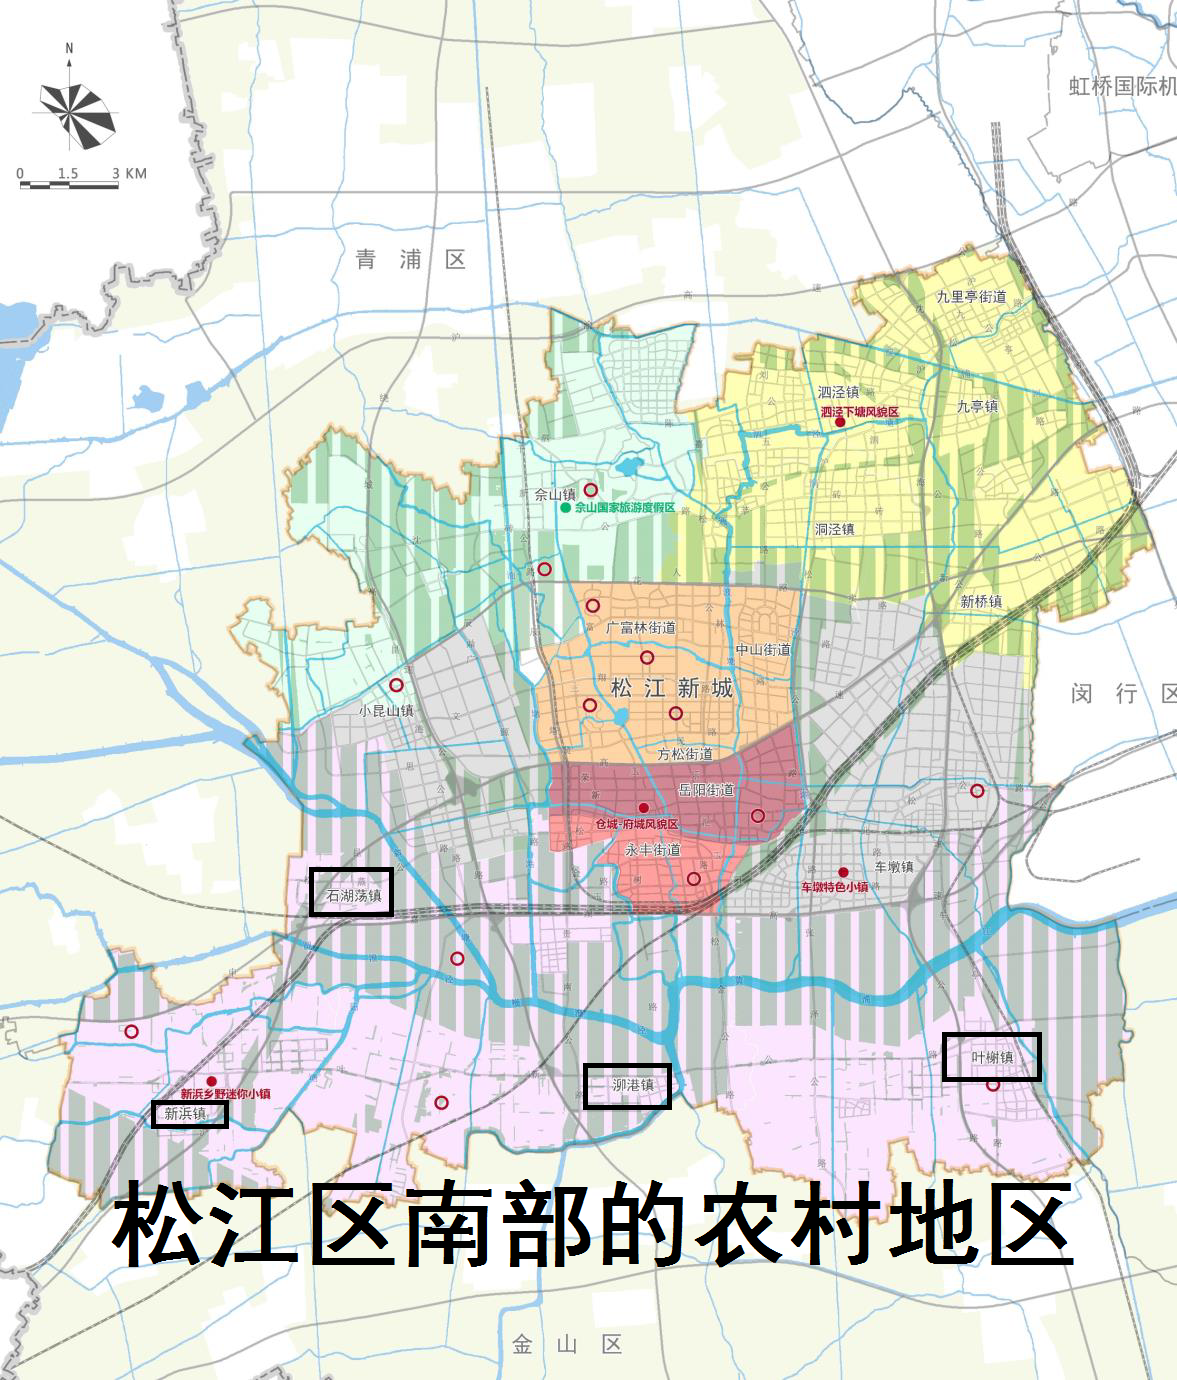 松江街道划分地图图片